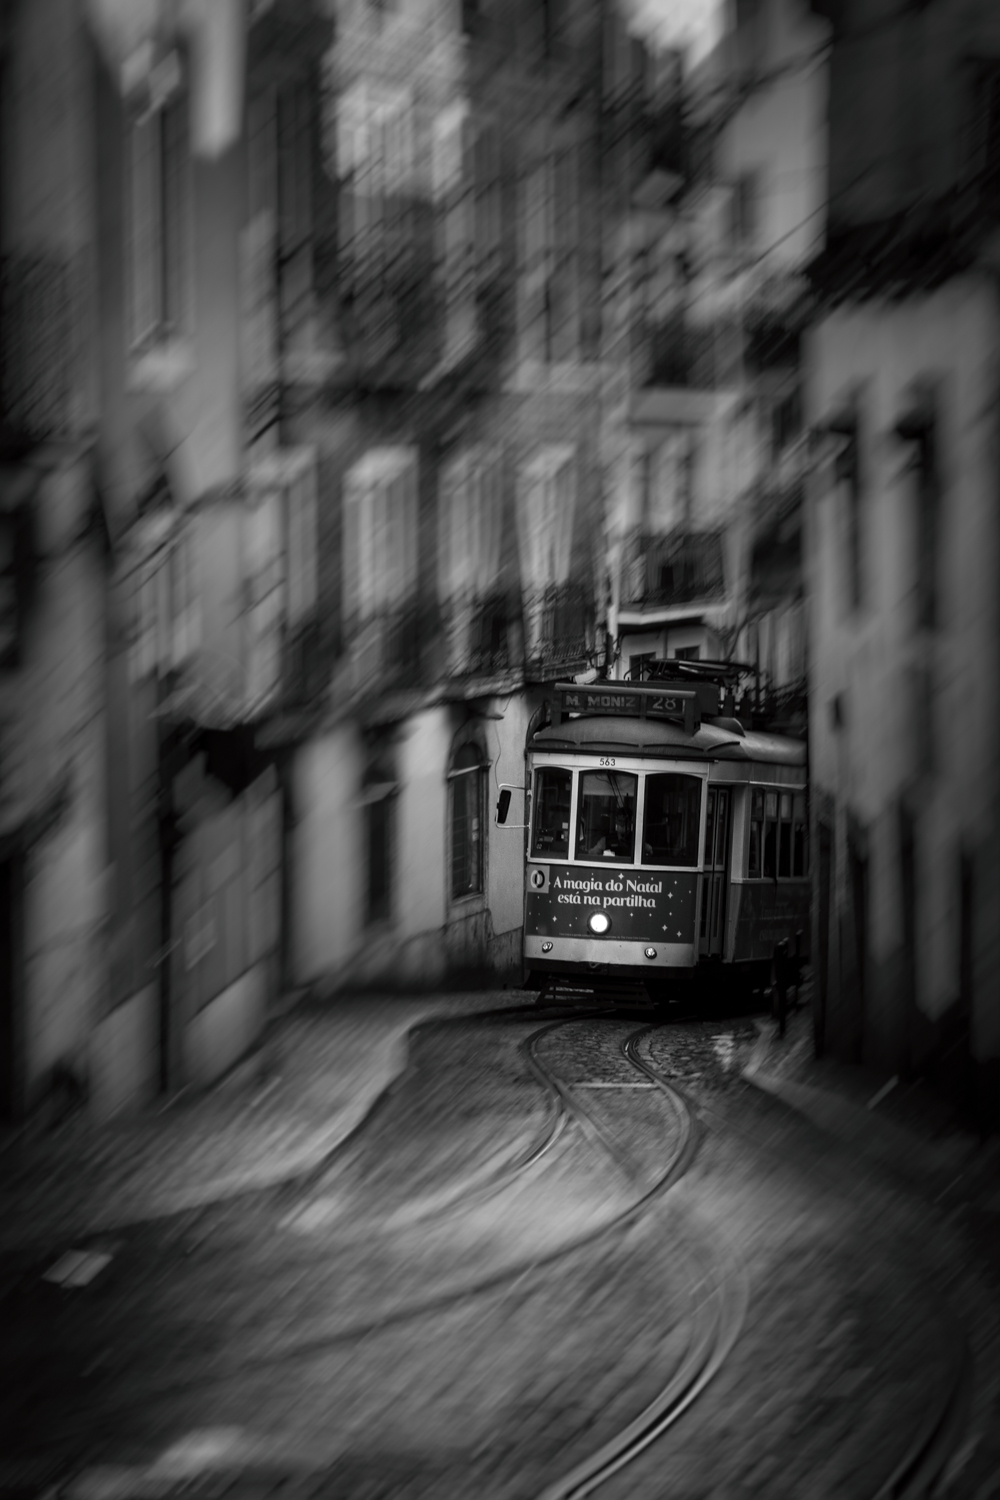 Timeless Tram, Lisbon by Ben Speed